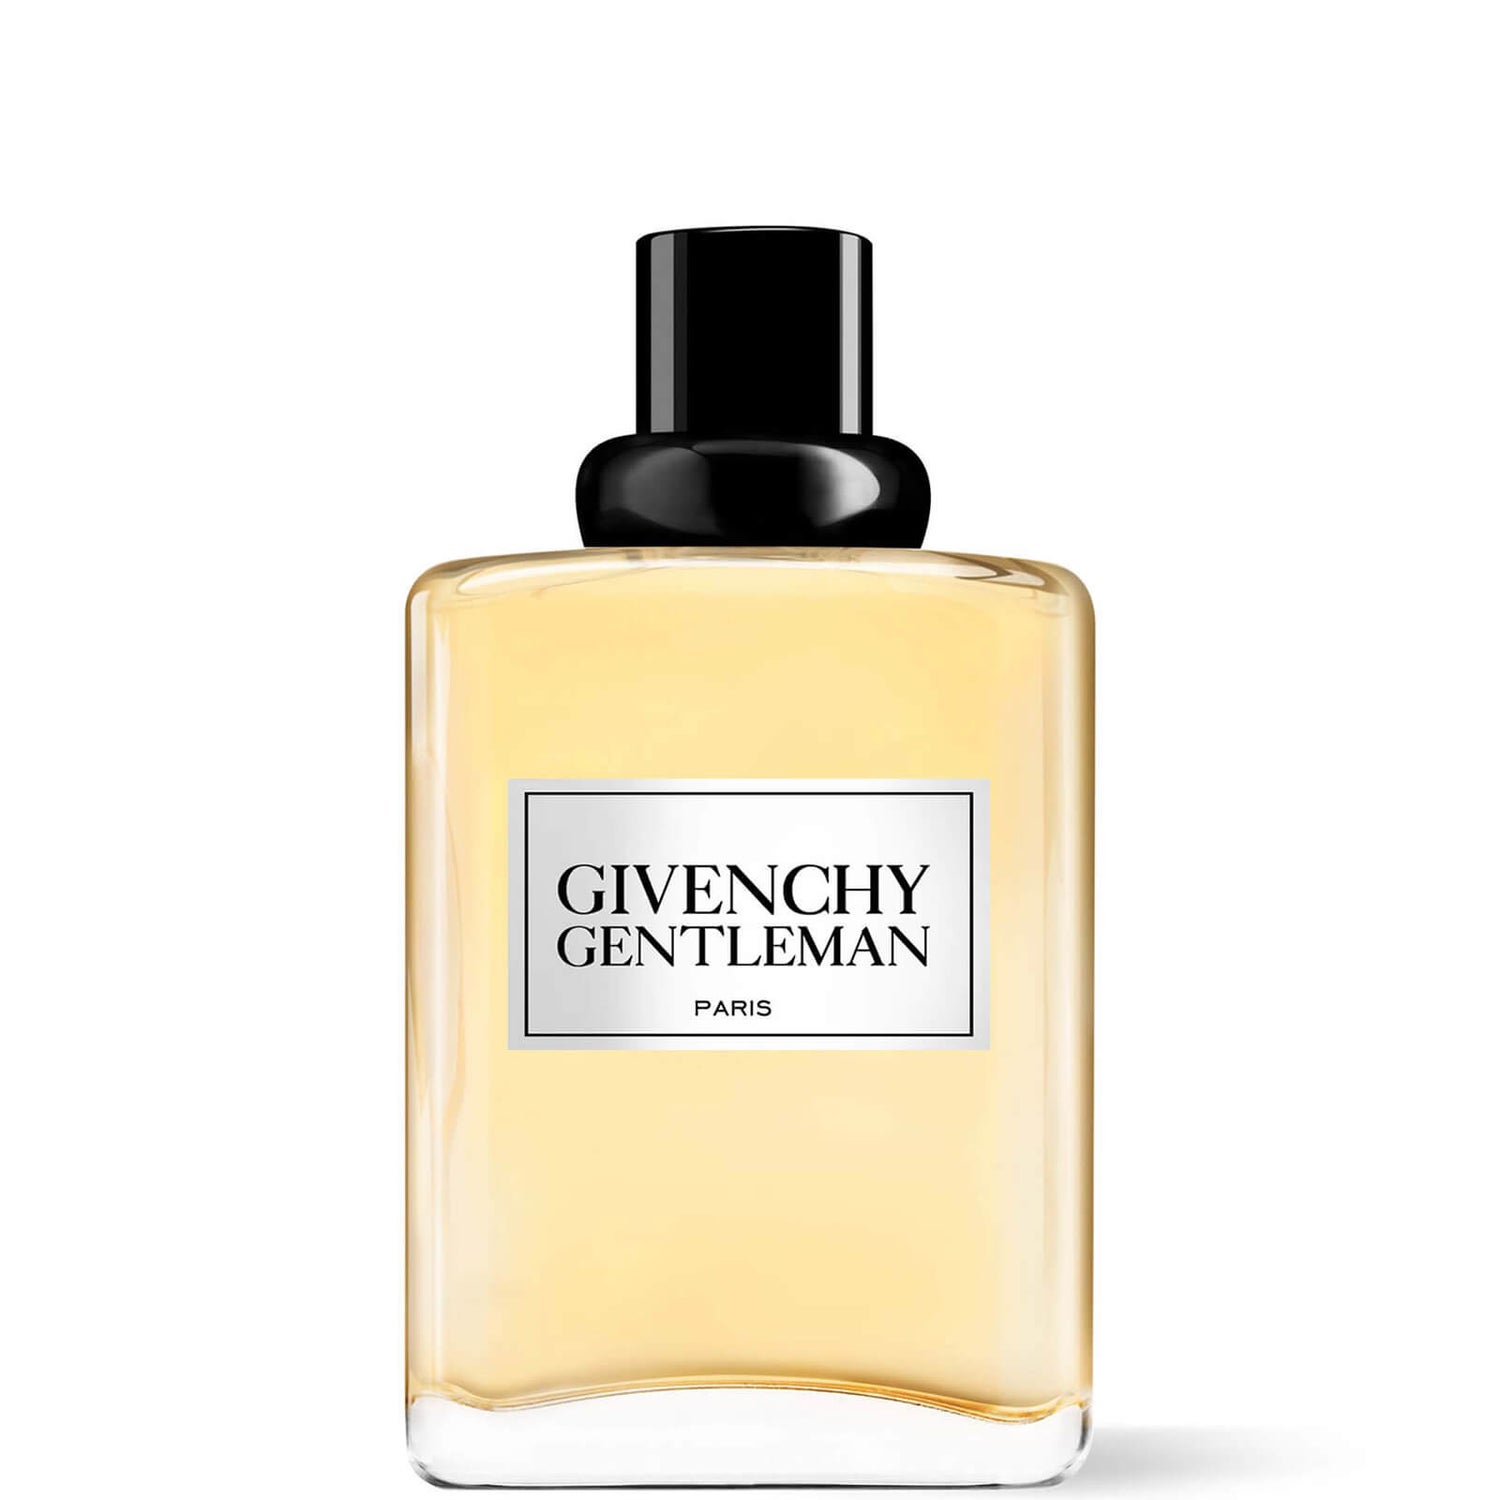 Givenchy Gentleman Original Eau de Toilette 100ml